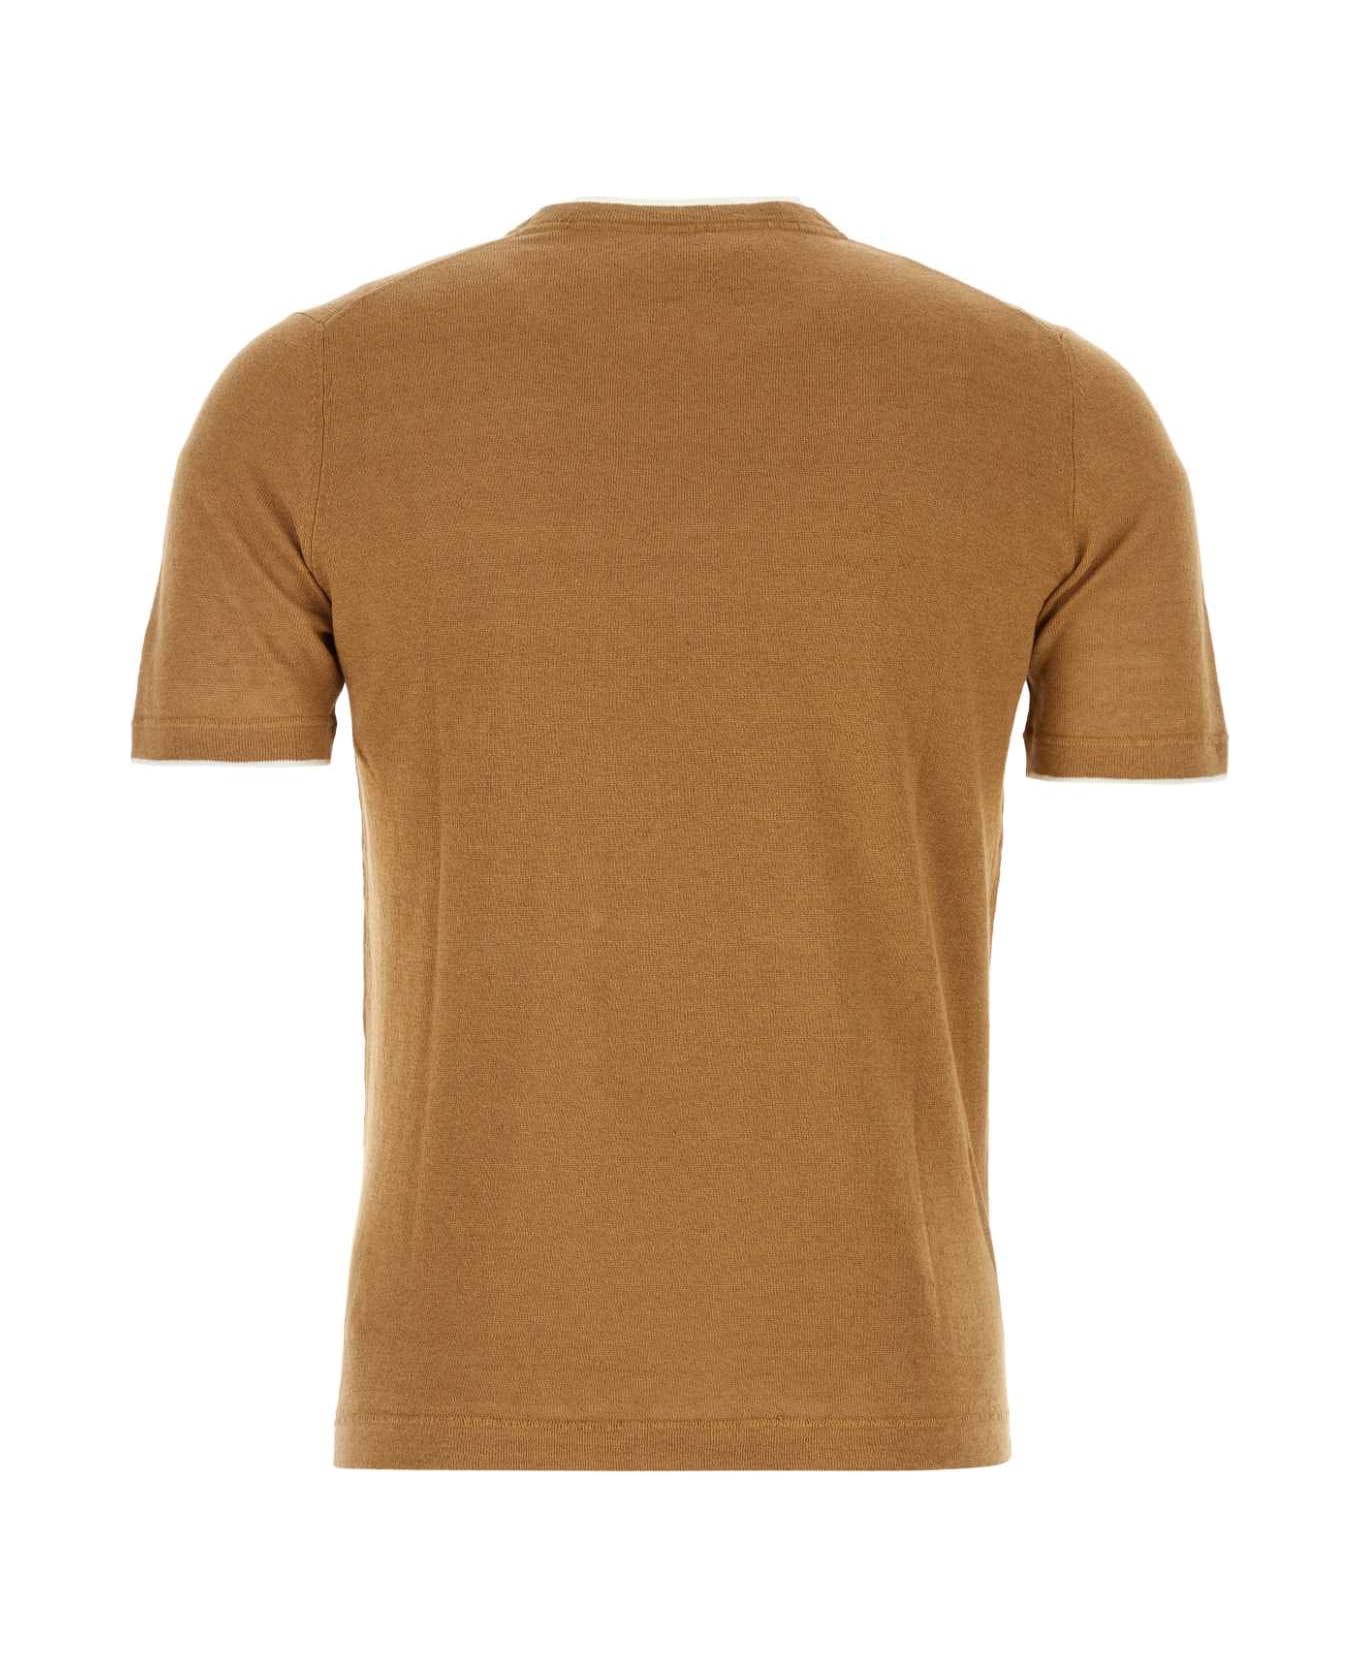 Fedeli Caramel Linen Blend Fox T-shirt - BISCOTTO シャツ